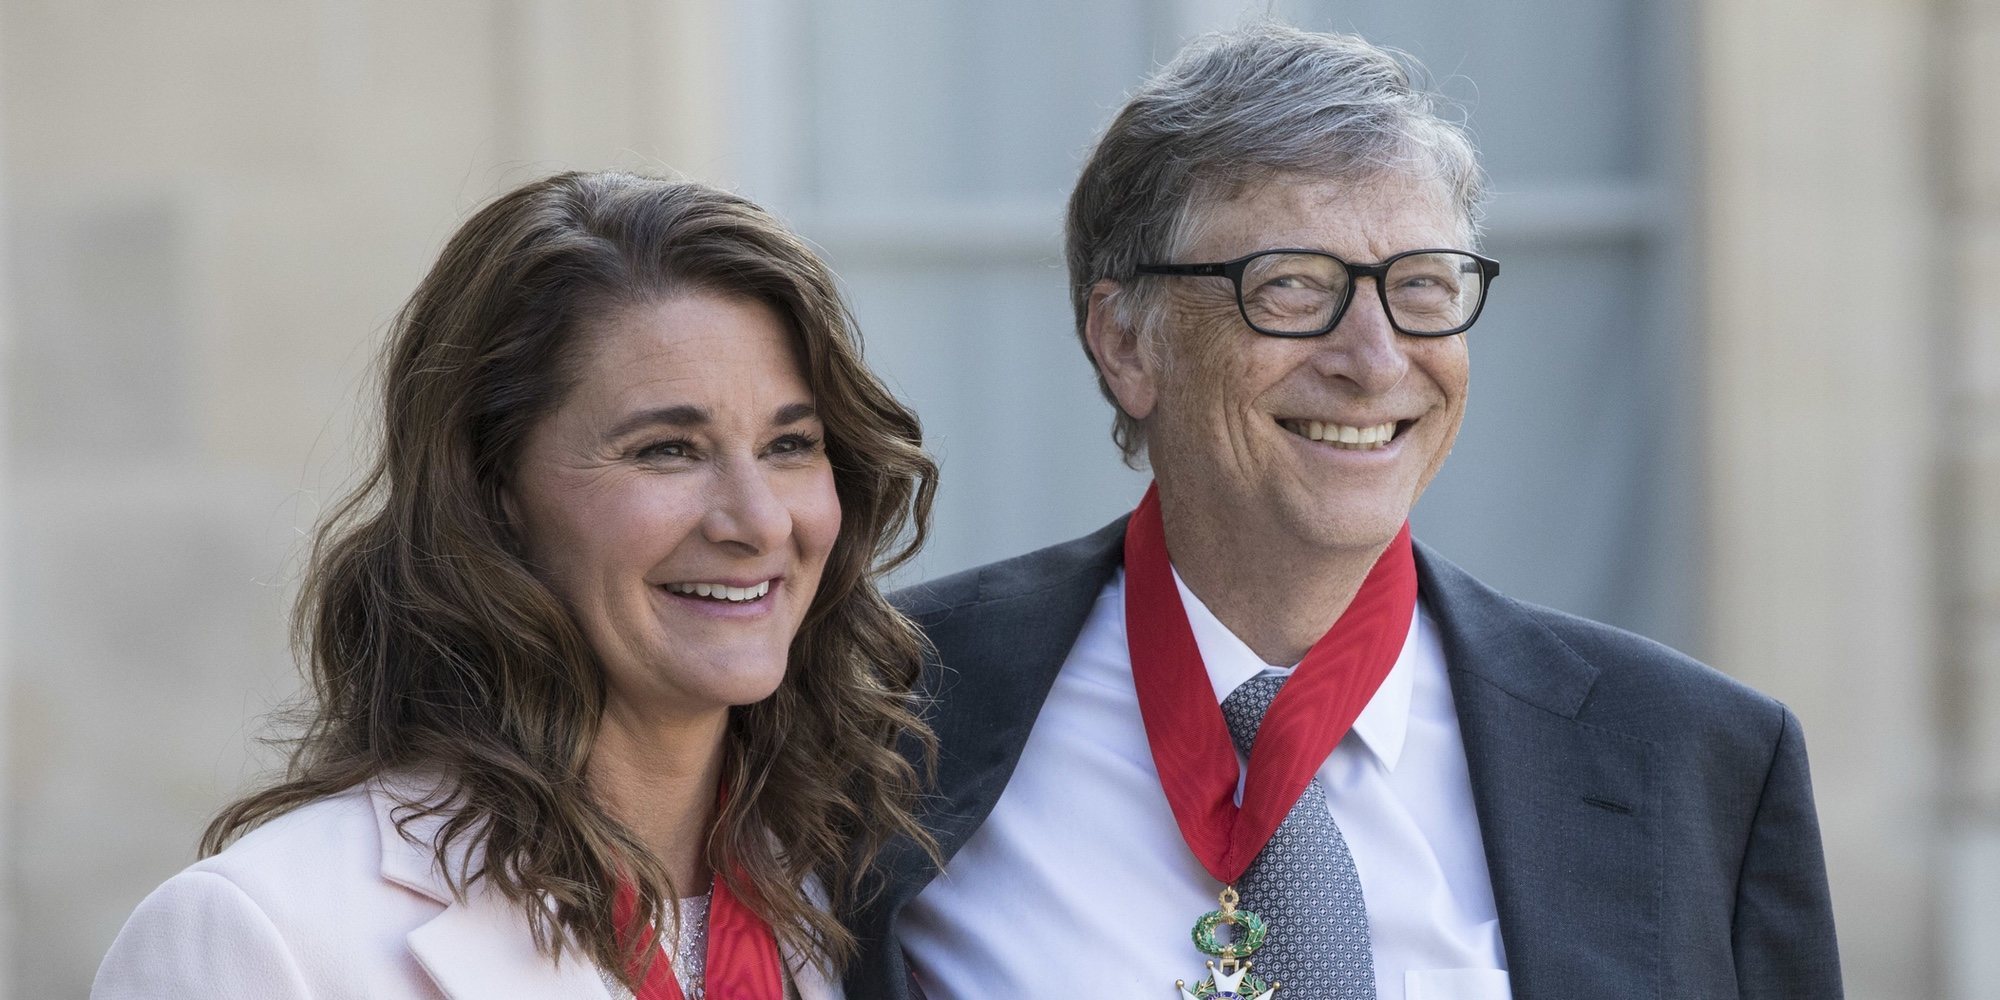 Bill Gates y Melinda Gates anuncian su divorcio tras 27 años de matrimonio